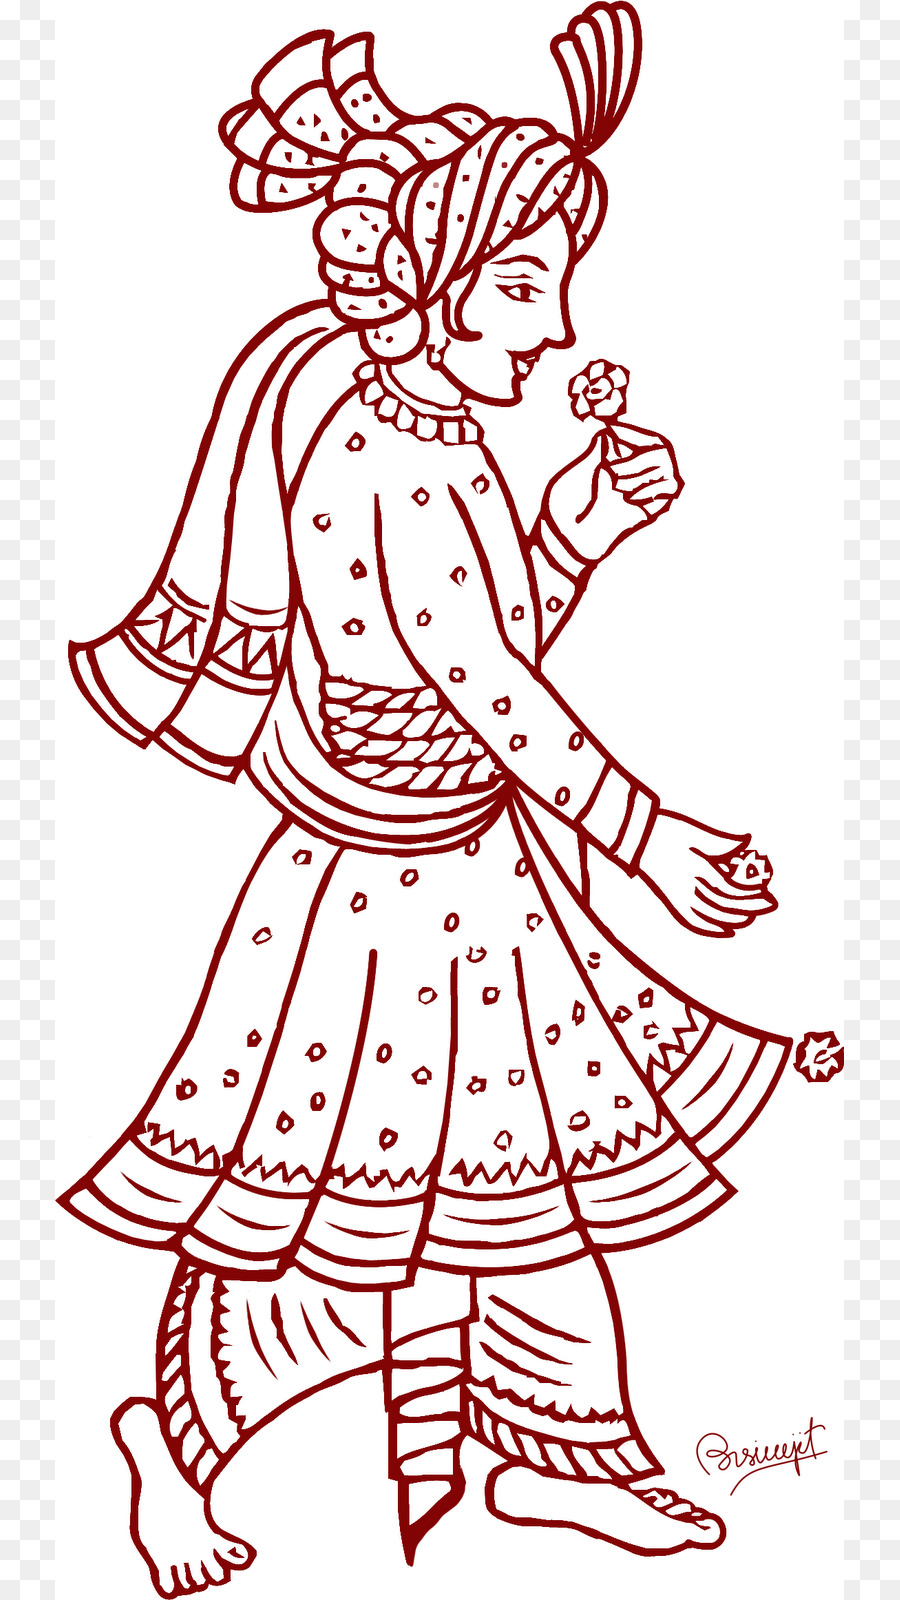 Weddings india bridegroom.